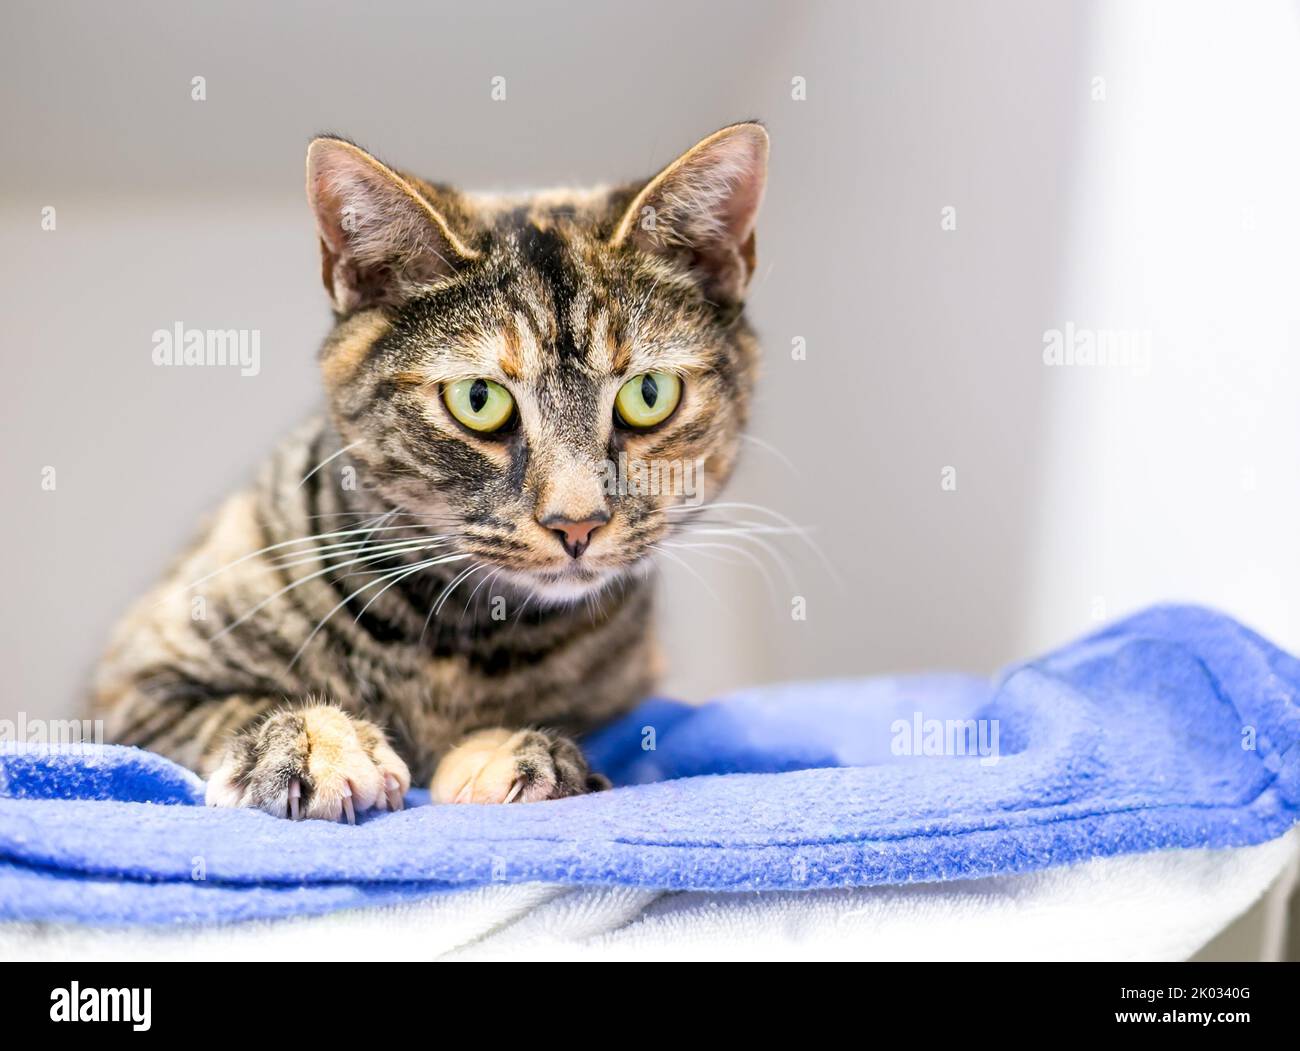 Un gatto shorthair con patched tortoiseshell tabby marcature giacente su una coperta e guardando verso il basso Foto Stock